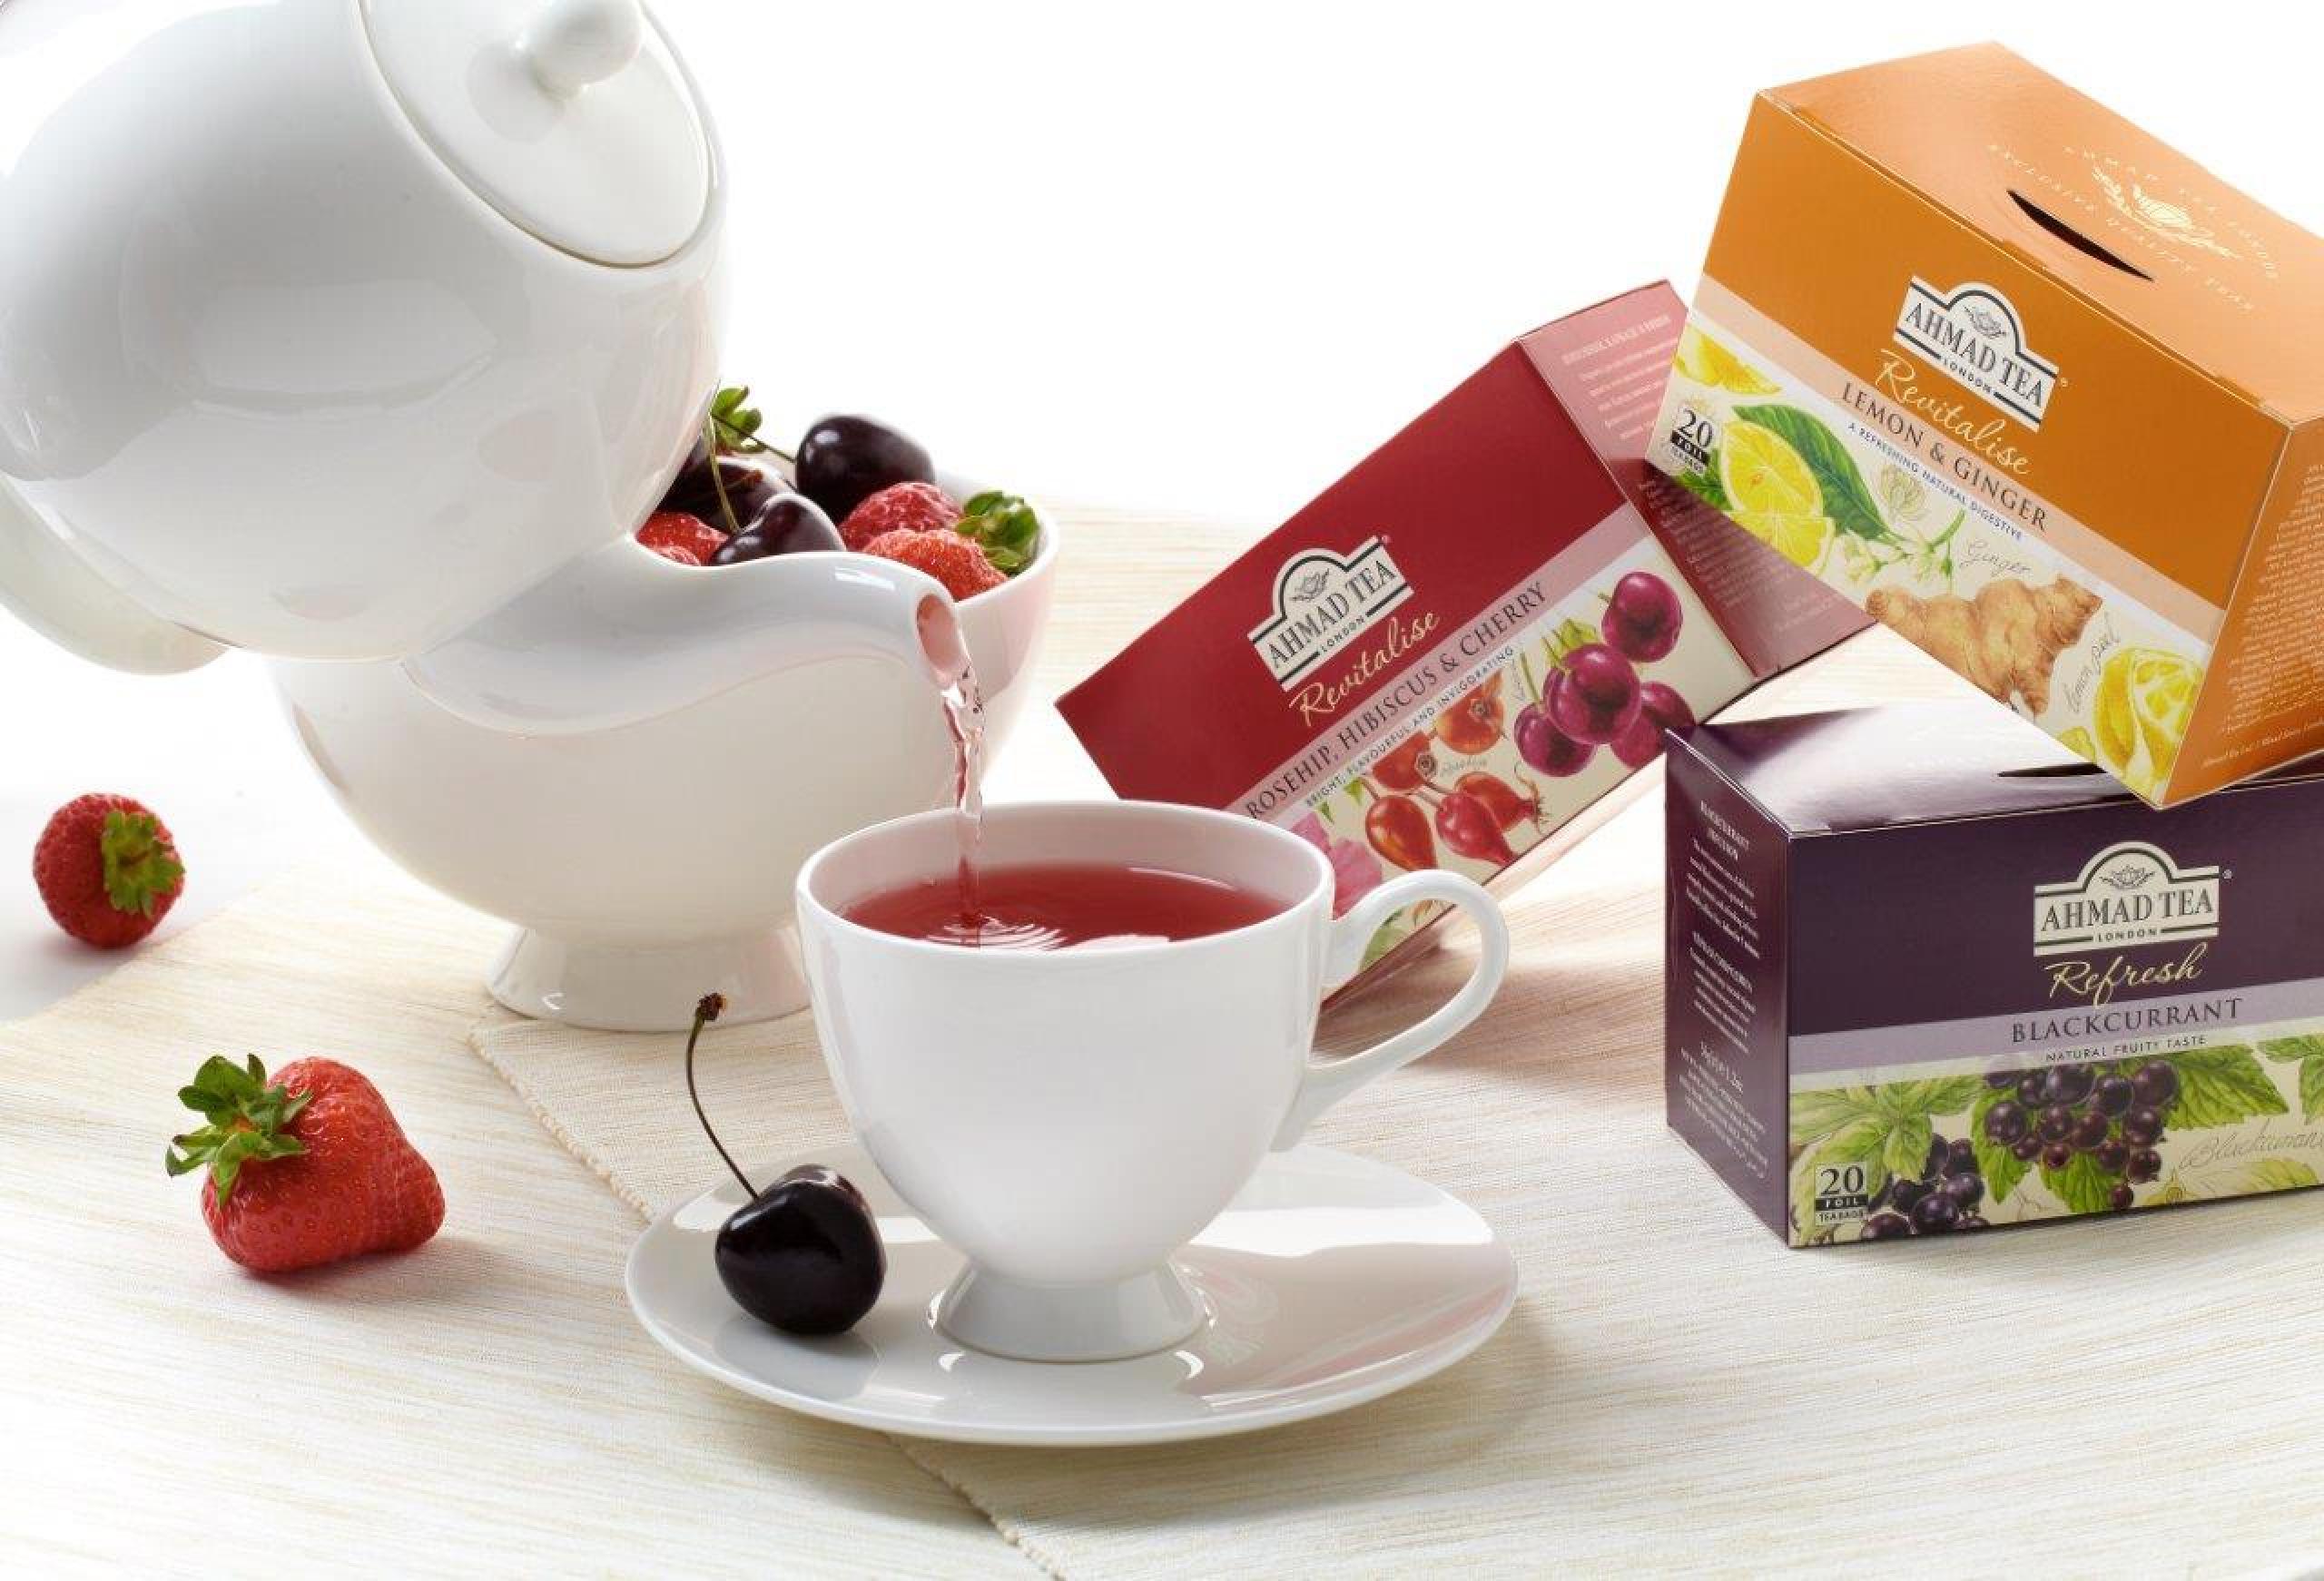 Soutěž pro zahřátí: vyhrajte ovocné čaje Ahmad Tea London | Apetit Online